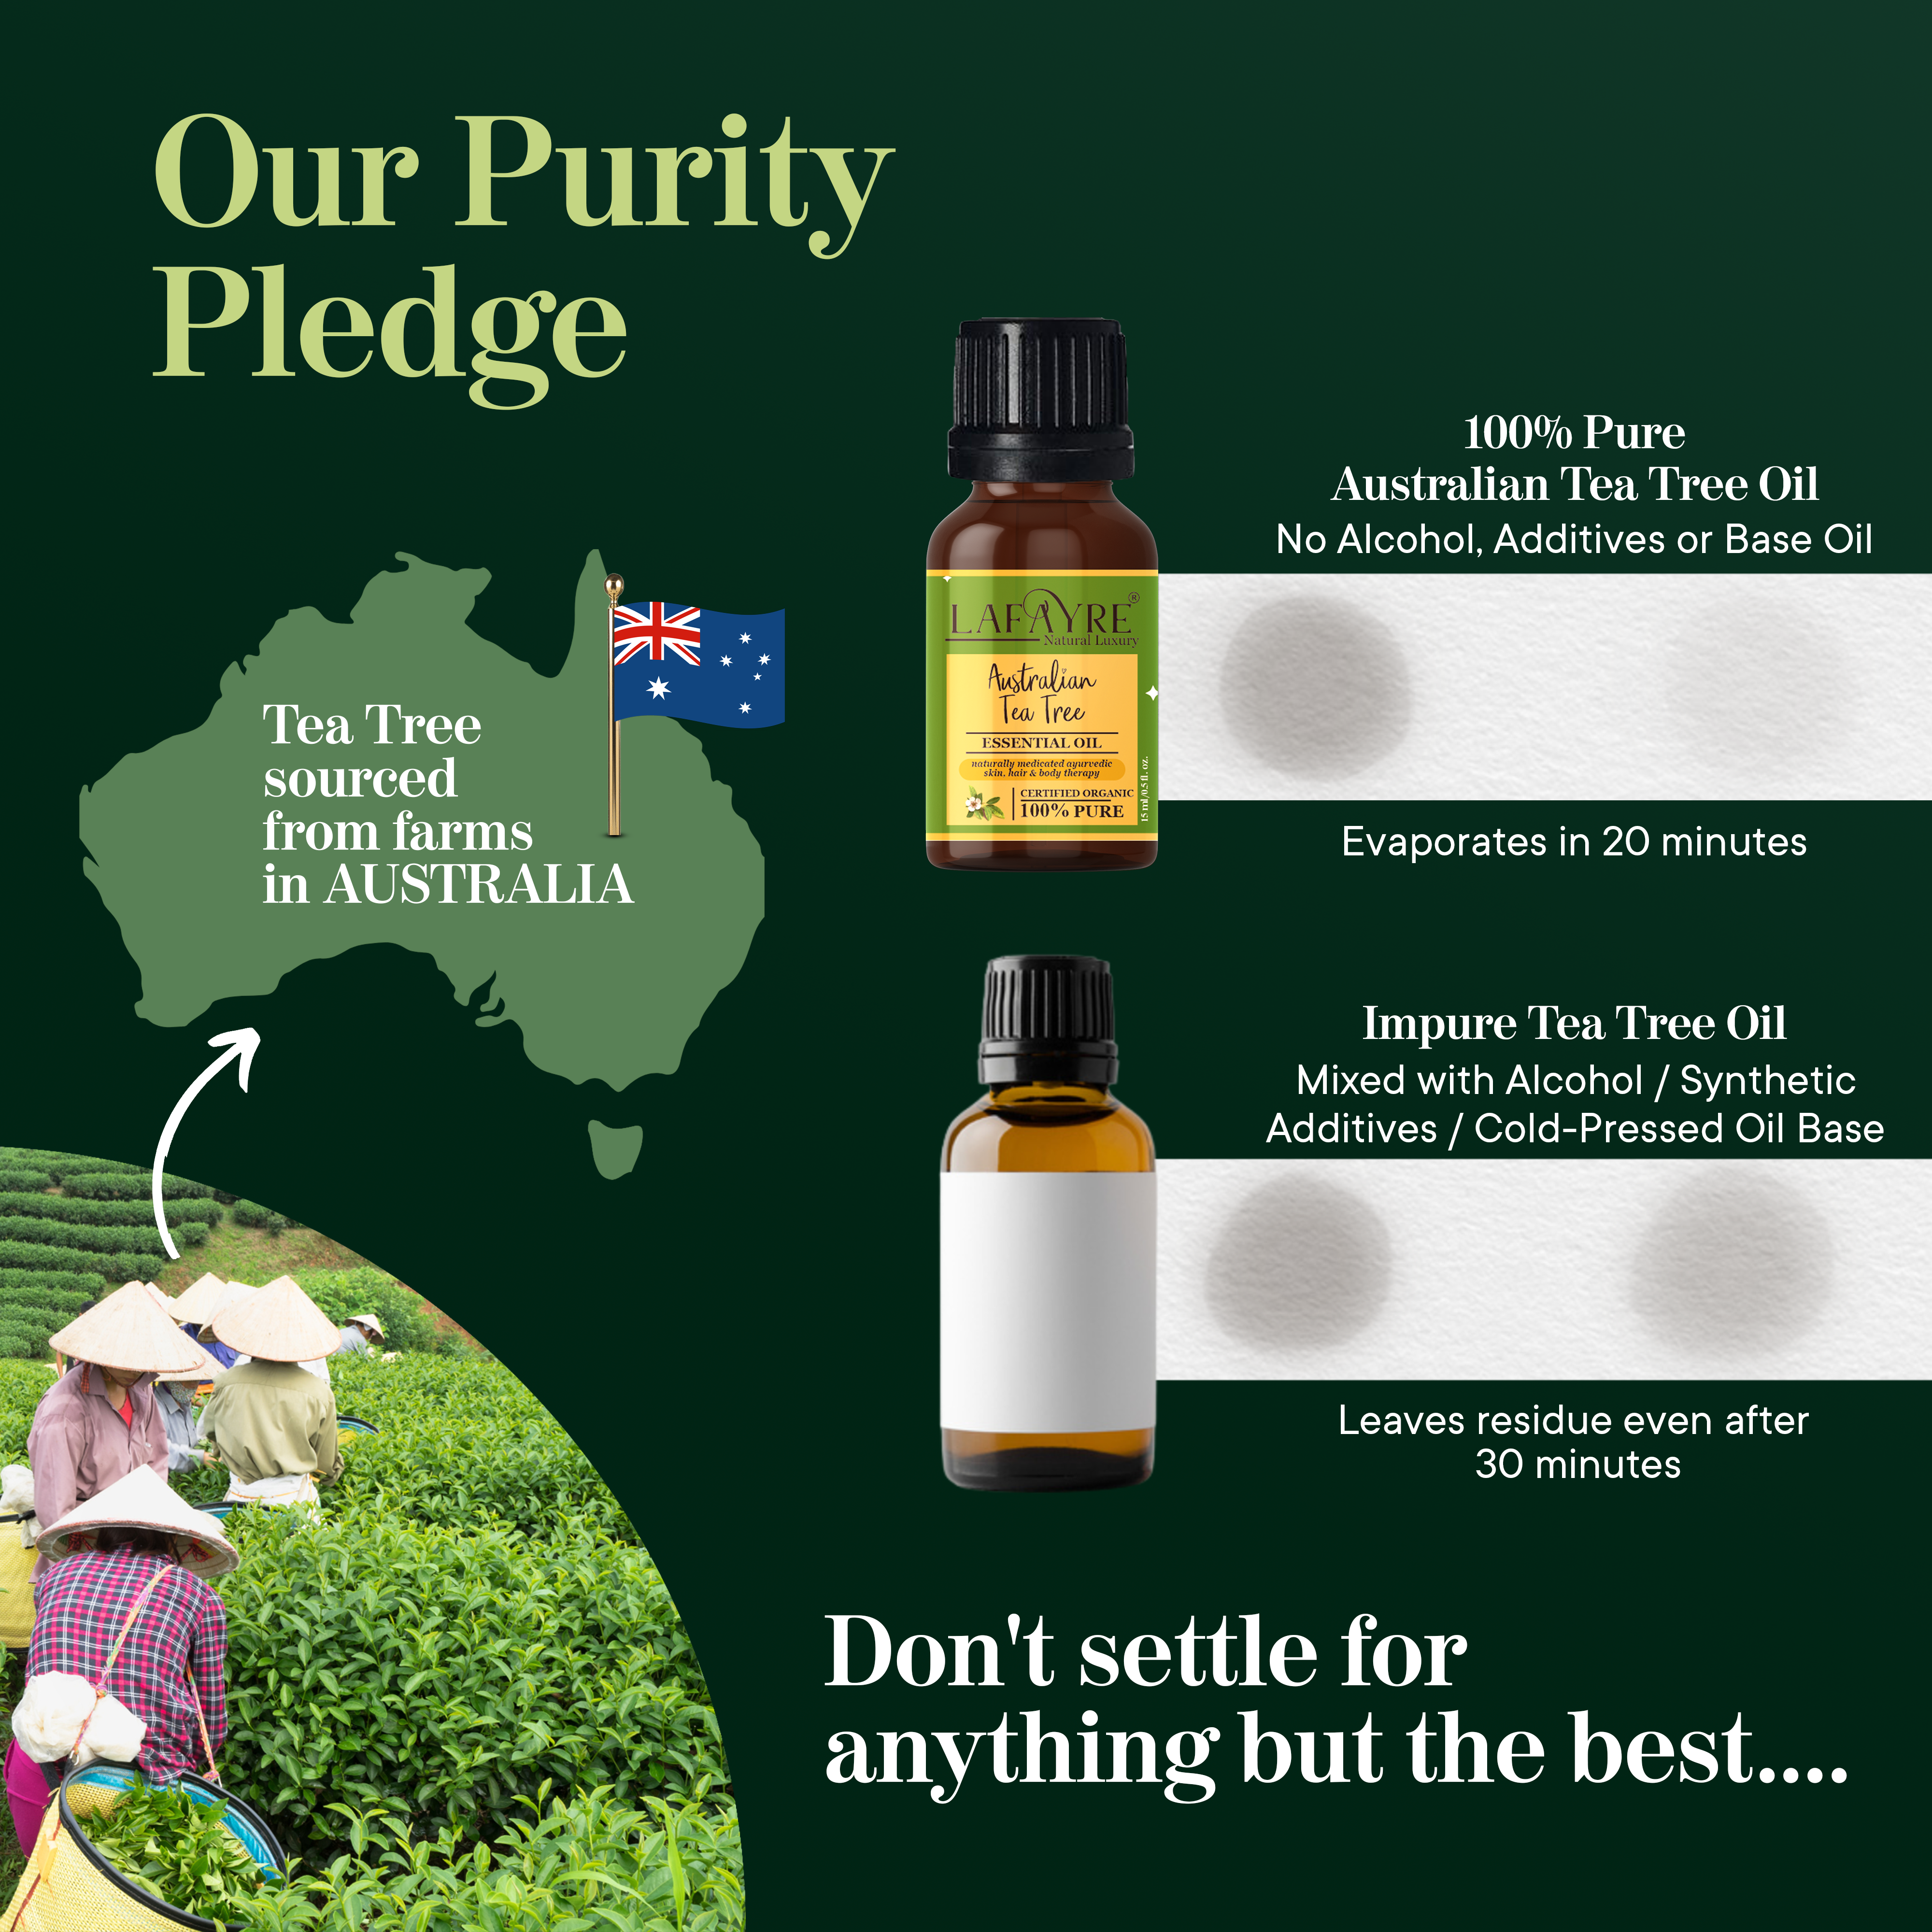 Australian Tea Tree Oil Pledge